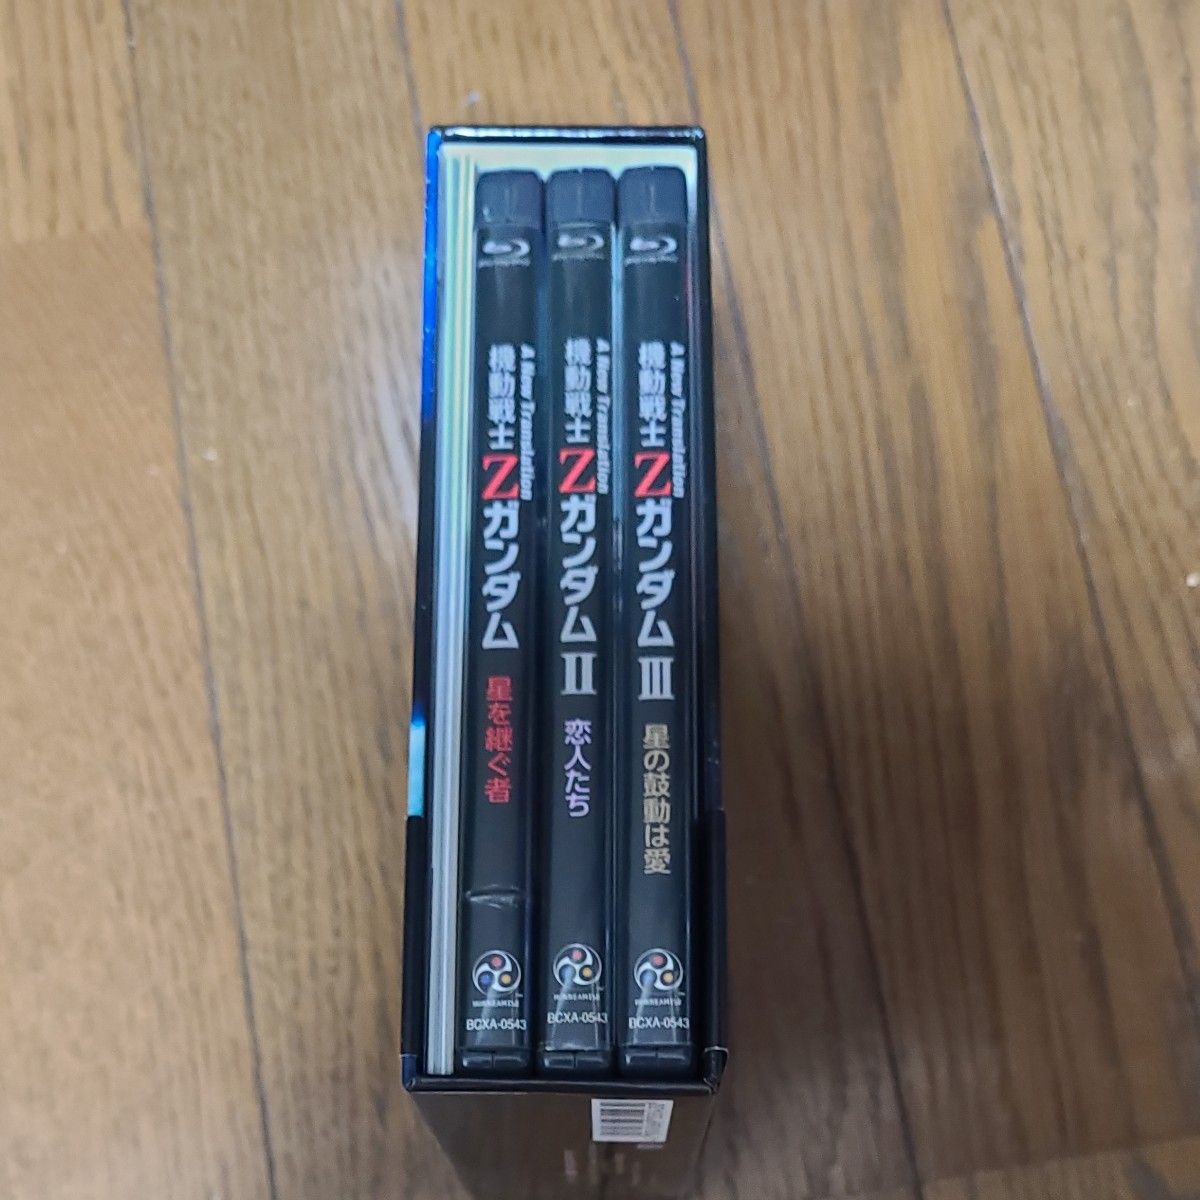 「機動戦士Zガンダム 劇場版Blu-ray BOX〈2012年12月31日までの期間限定生産・3枚組〉」